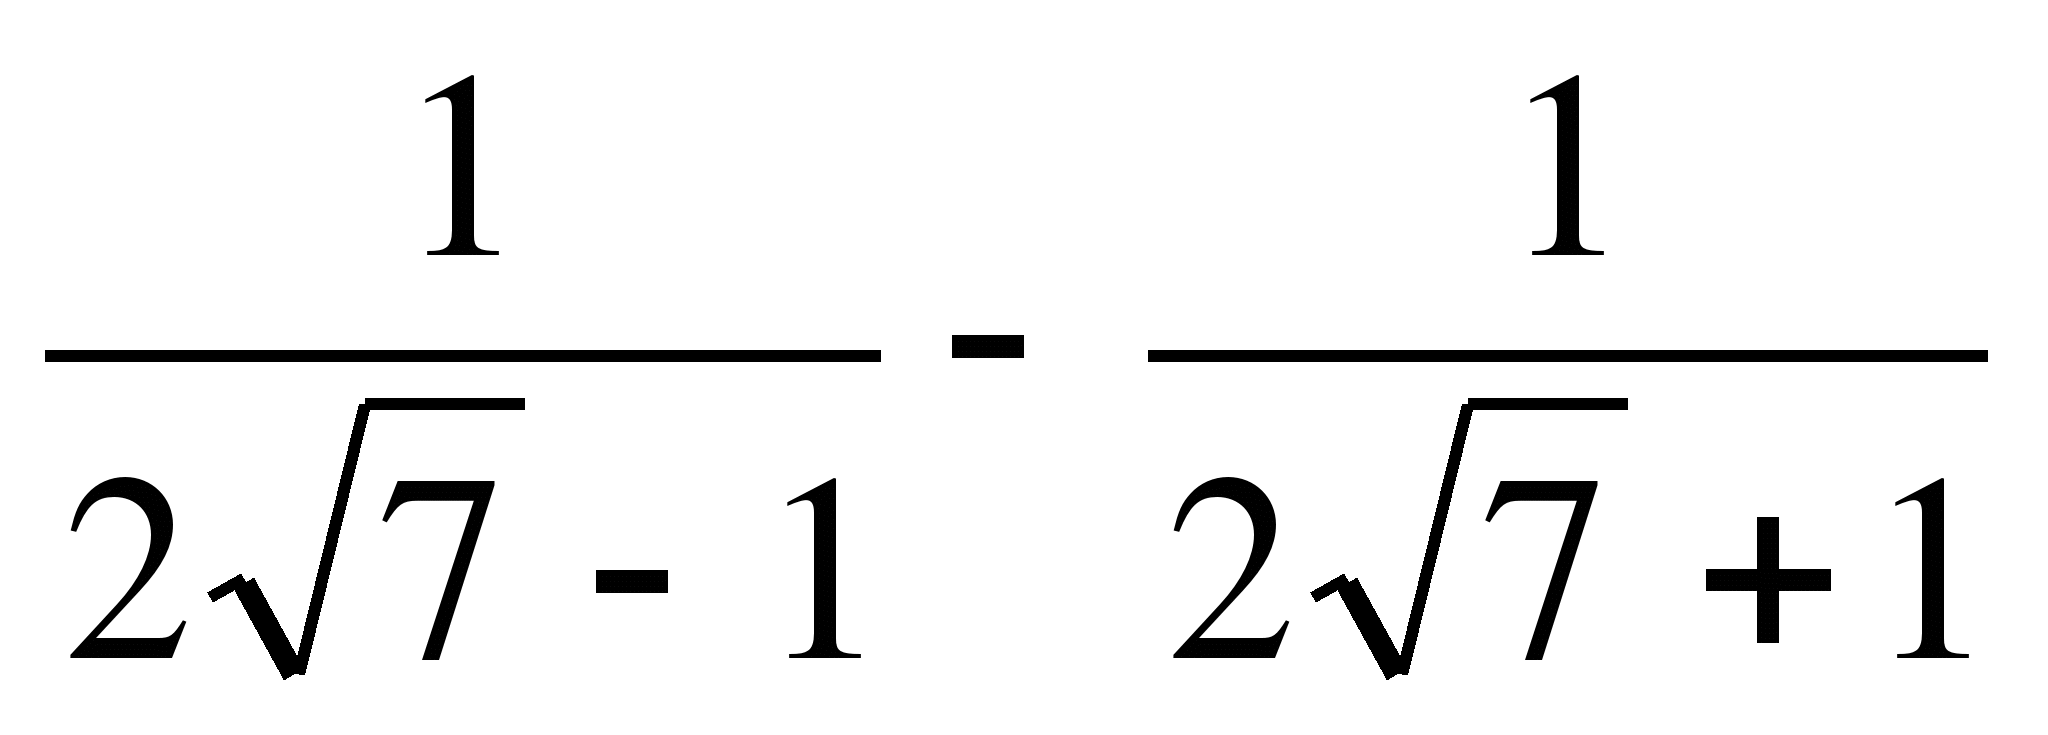 4 дробь корень 15. Докажите что значение выражения есть число рациональное. Корень из минус 1. 2 Корень из 7. 1/Корень из 7.